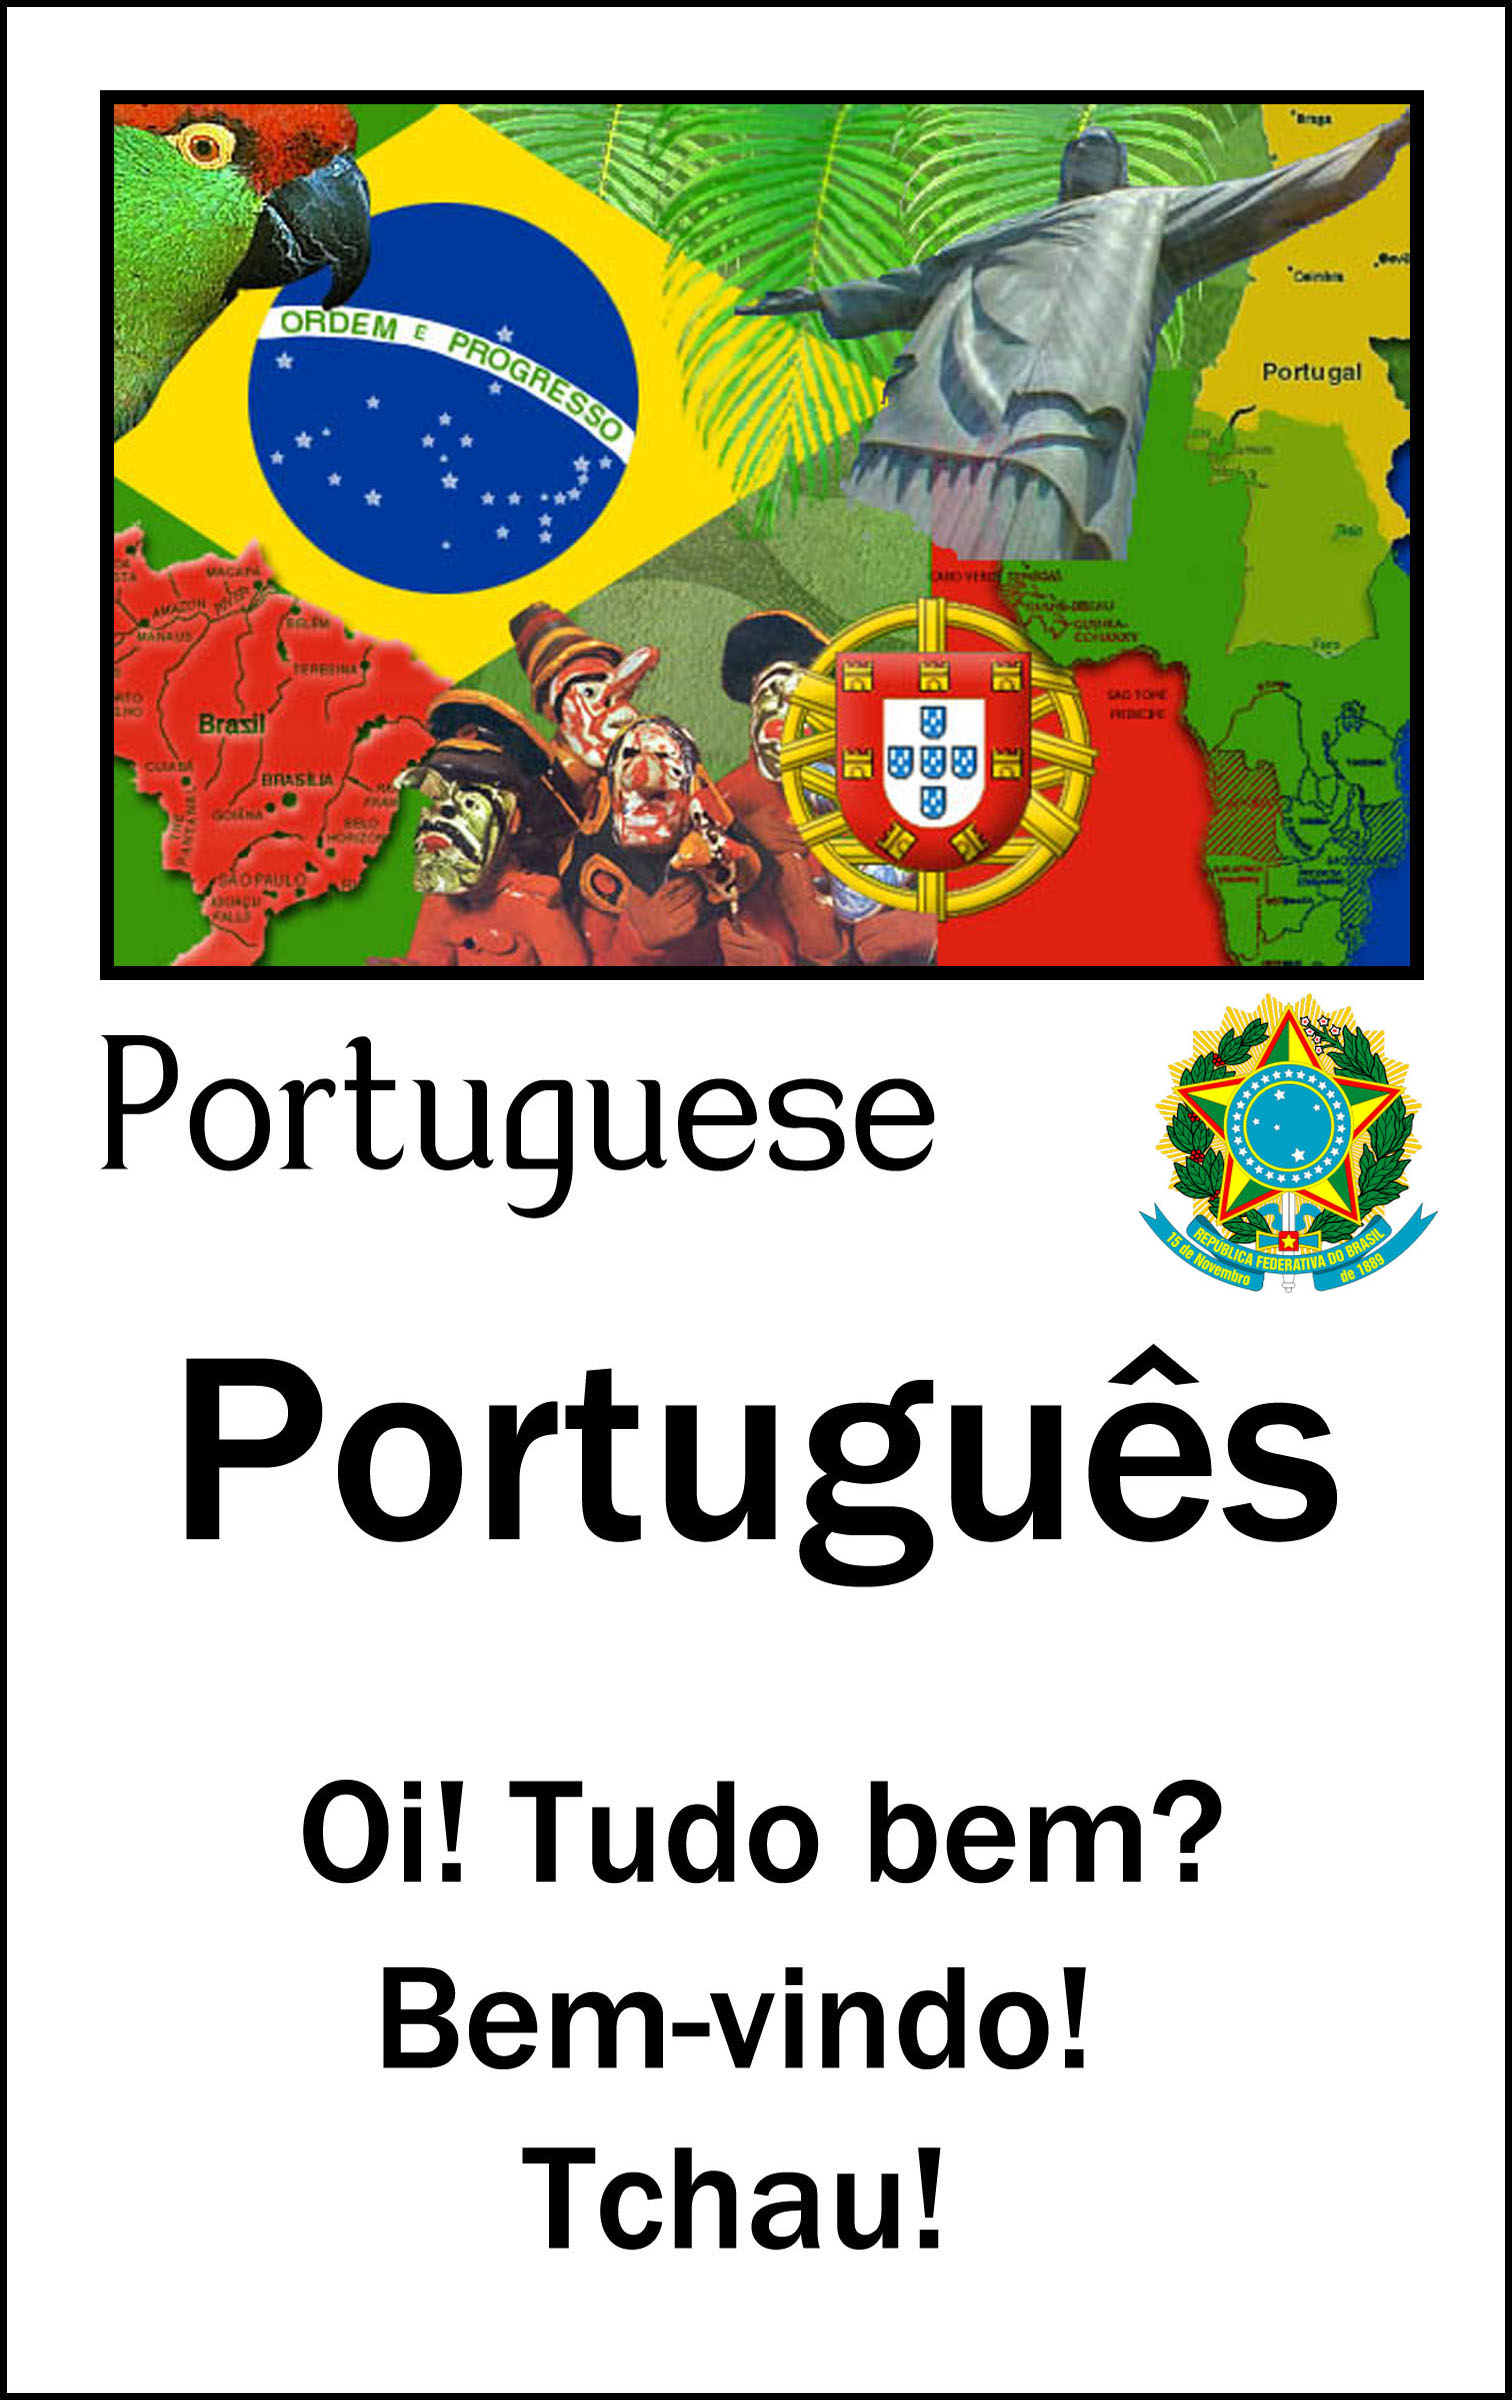 Portugues flyer with text: "Oi! Tudo bem? Bem-vindo! Tchau!"